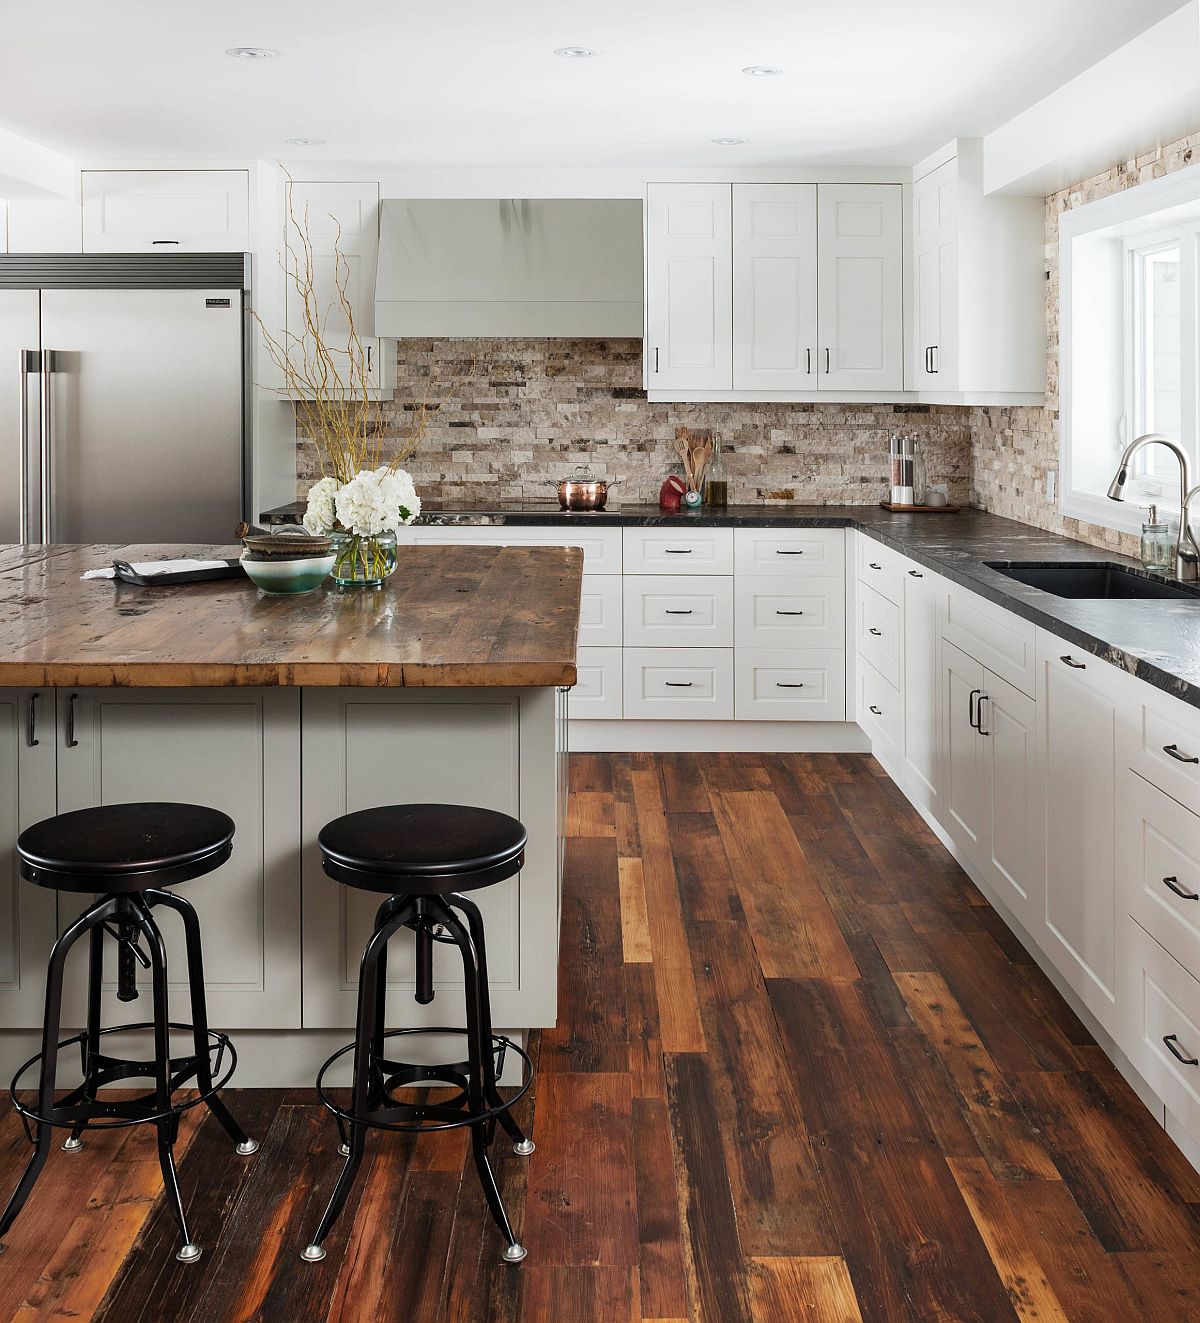 Hottest Trending Kitchen Floor For 2020 Wood Floors Take Over Kitchens Everywhere Laptrinhx News